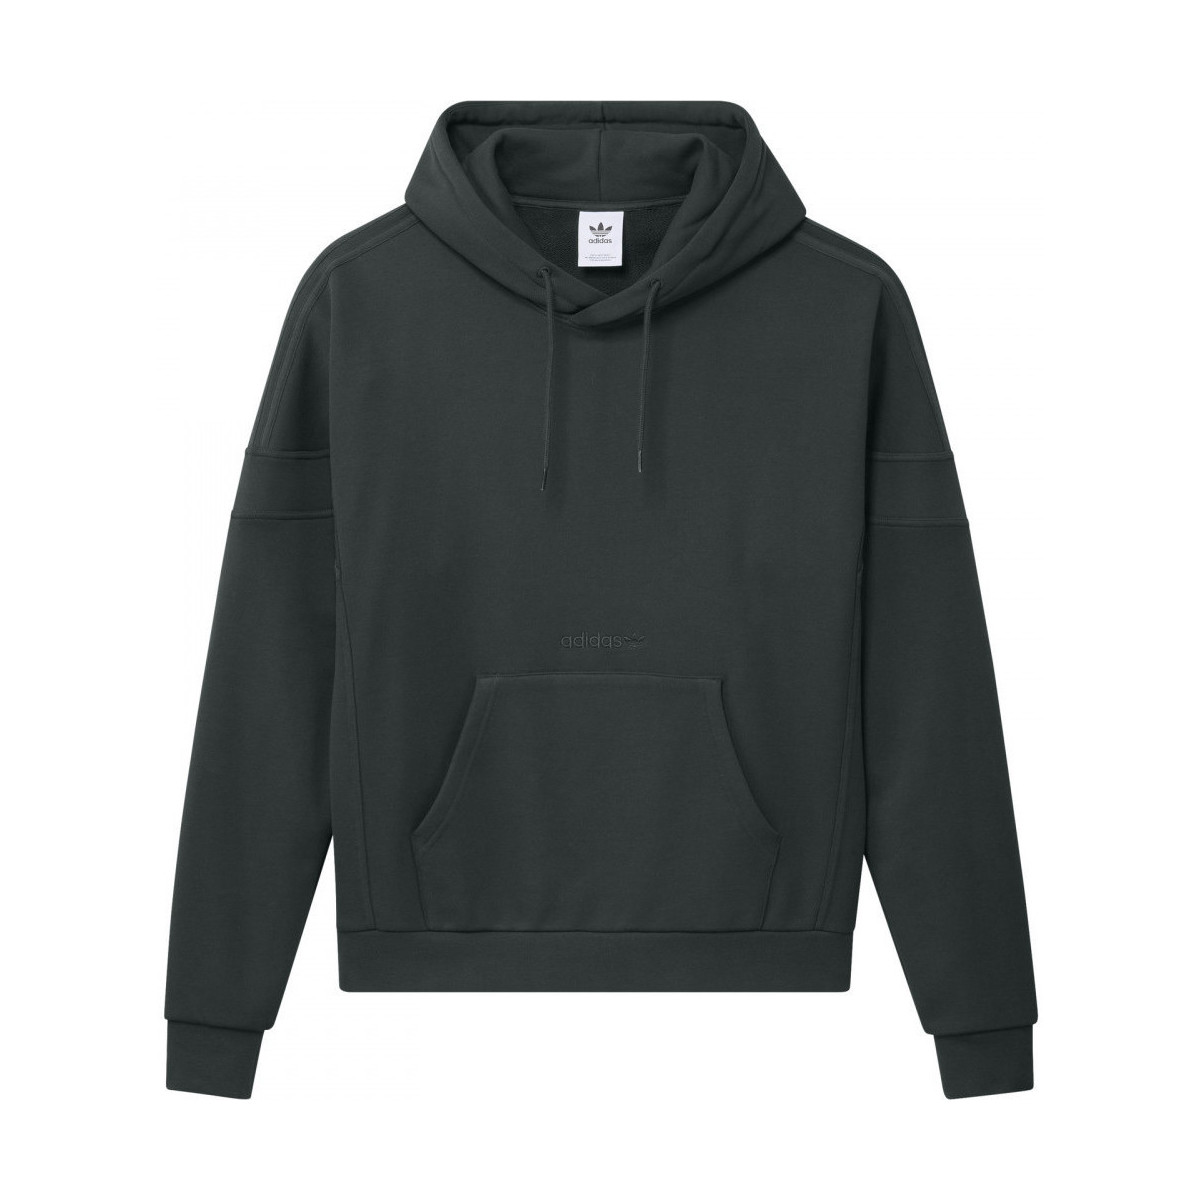 Textiel Heren Sweaters / Sweatshirts adidas Originals Challenger hood Groen